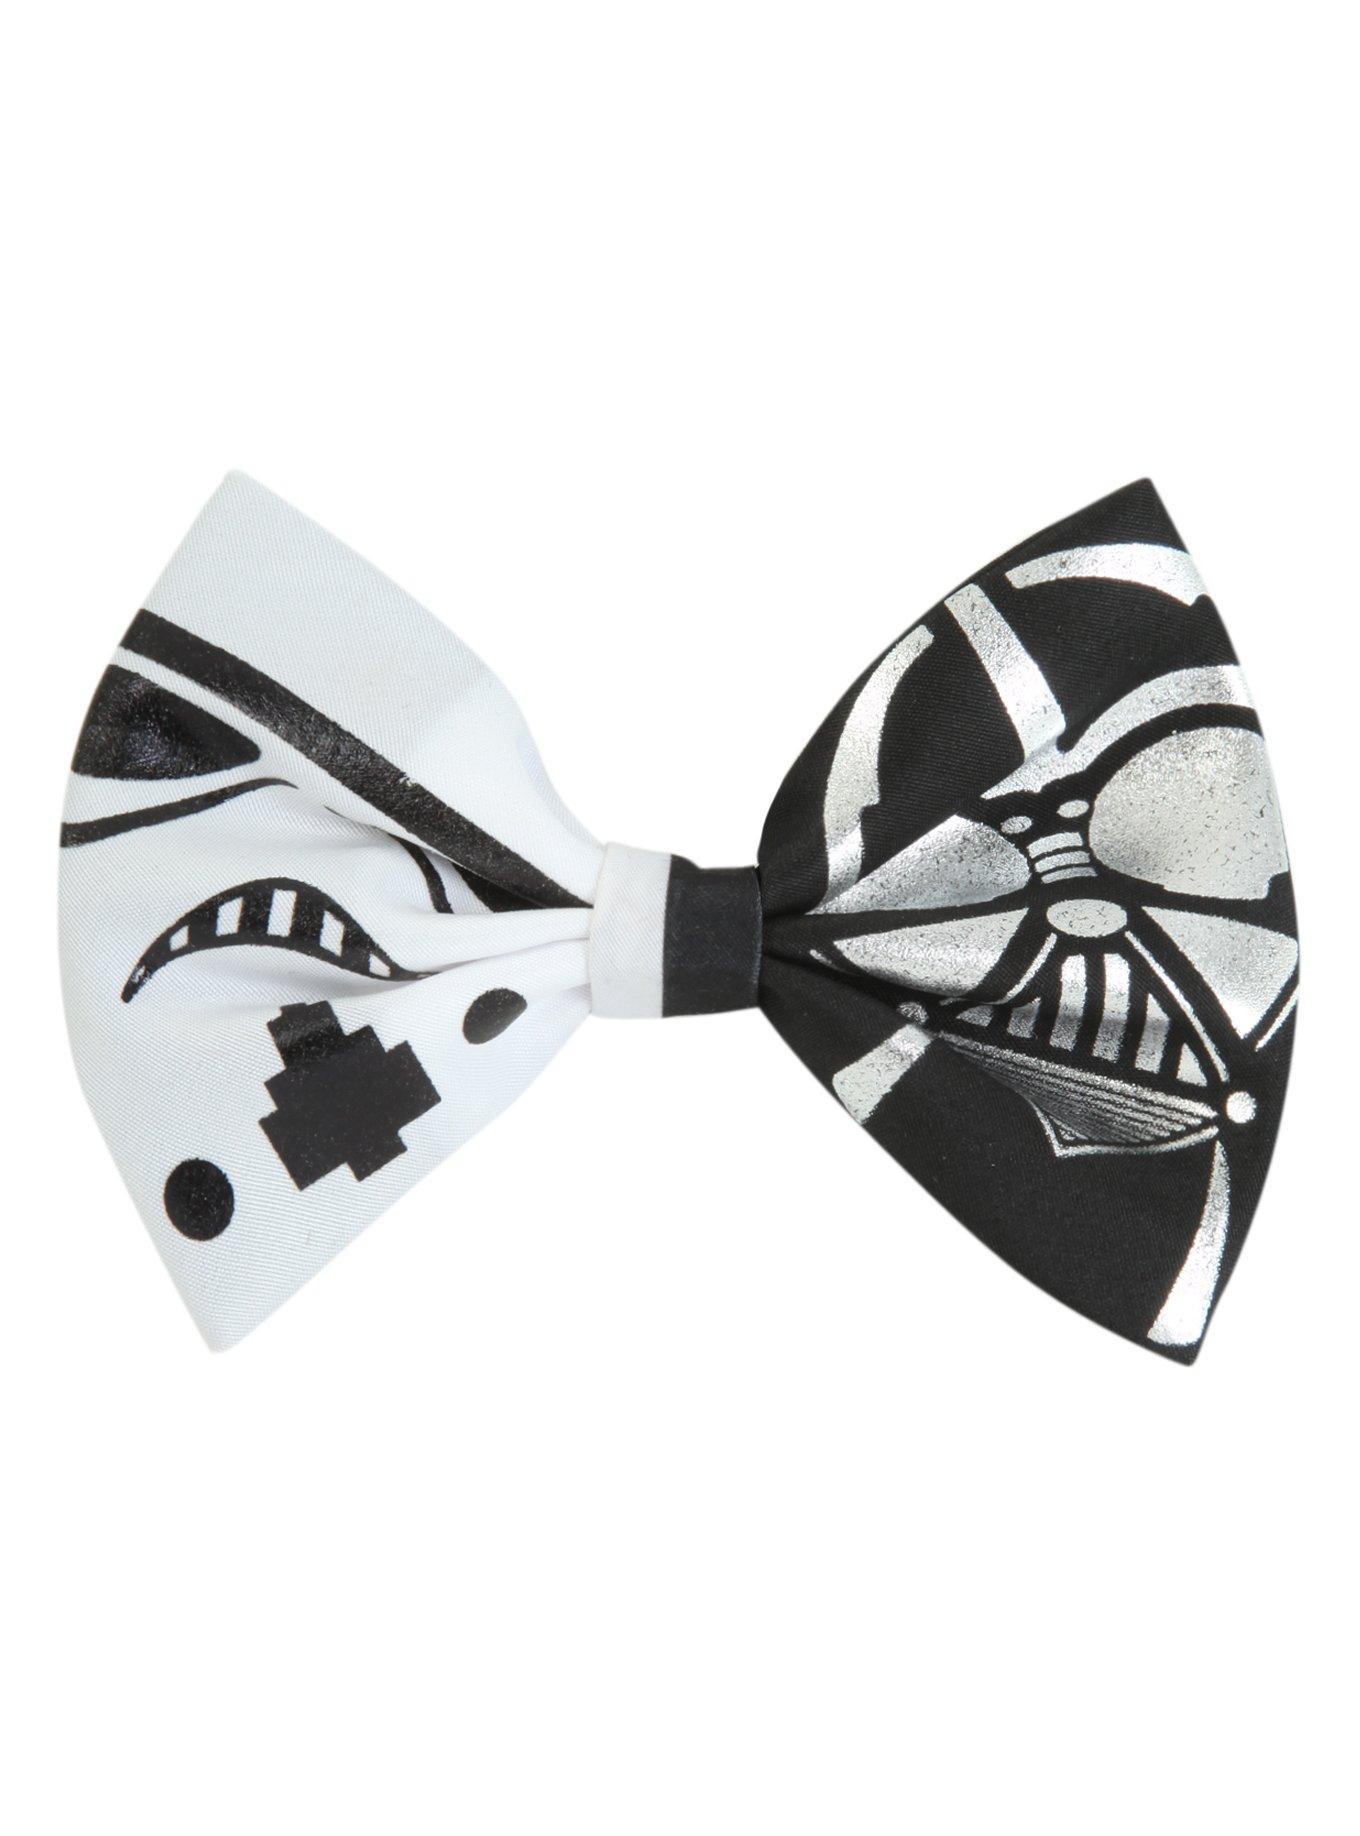 Star Wars Stormtrooper Darth Vader Hair Bow, , hi-res